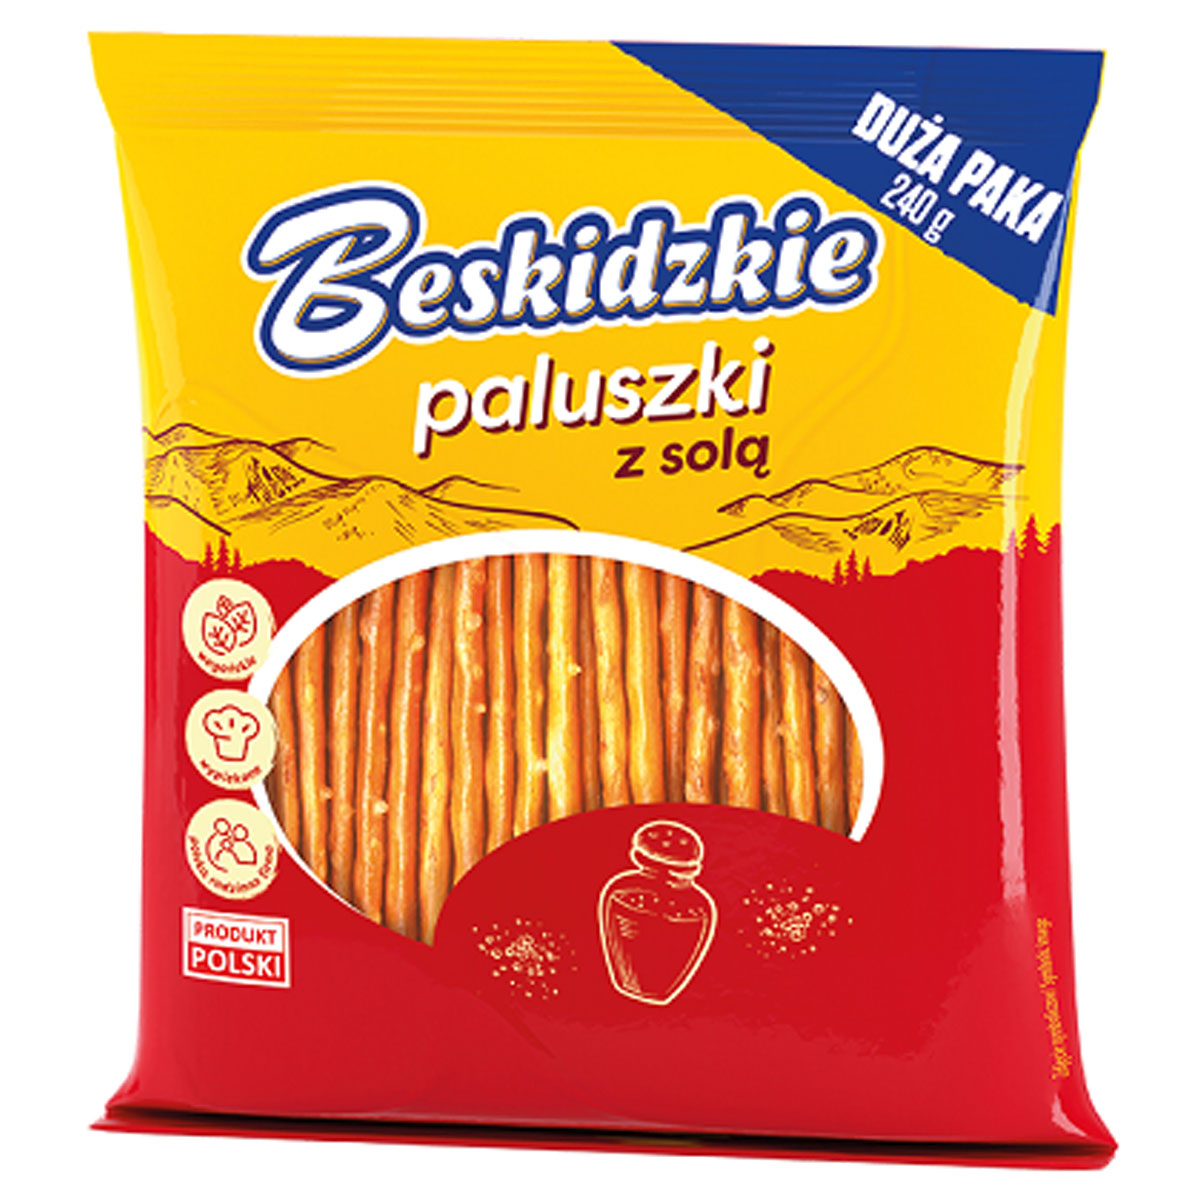 Beskidzkie - Salty Stick - 240g - Continental Food Store